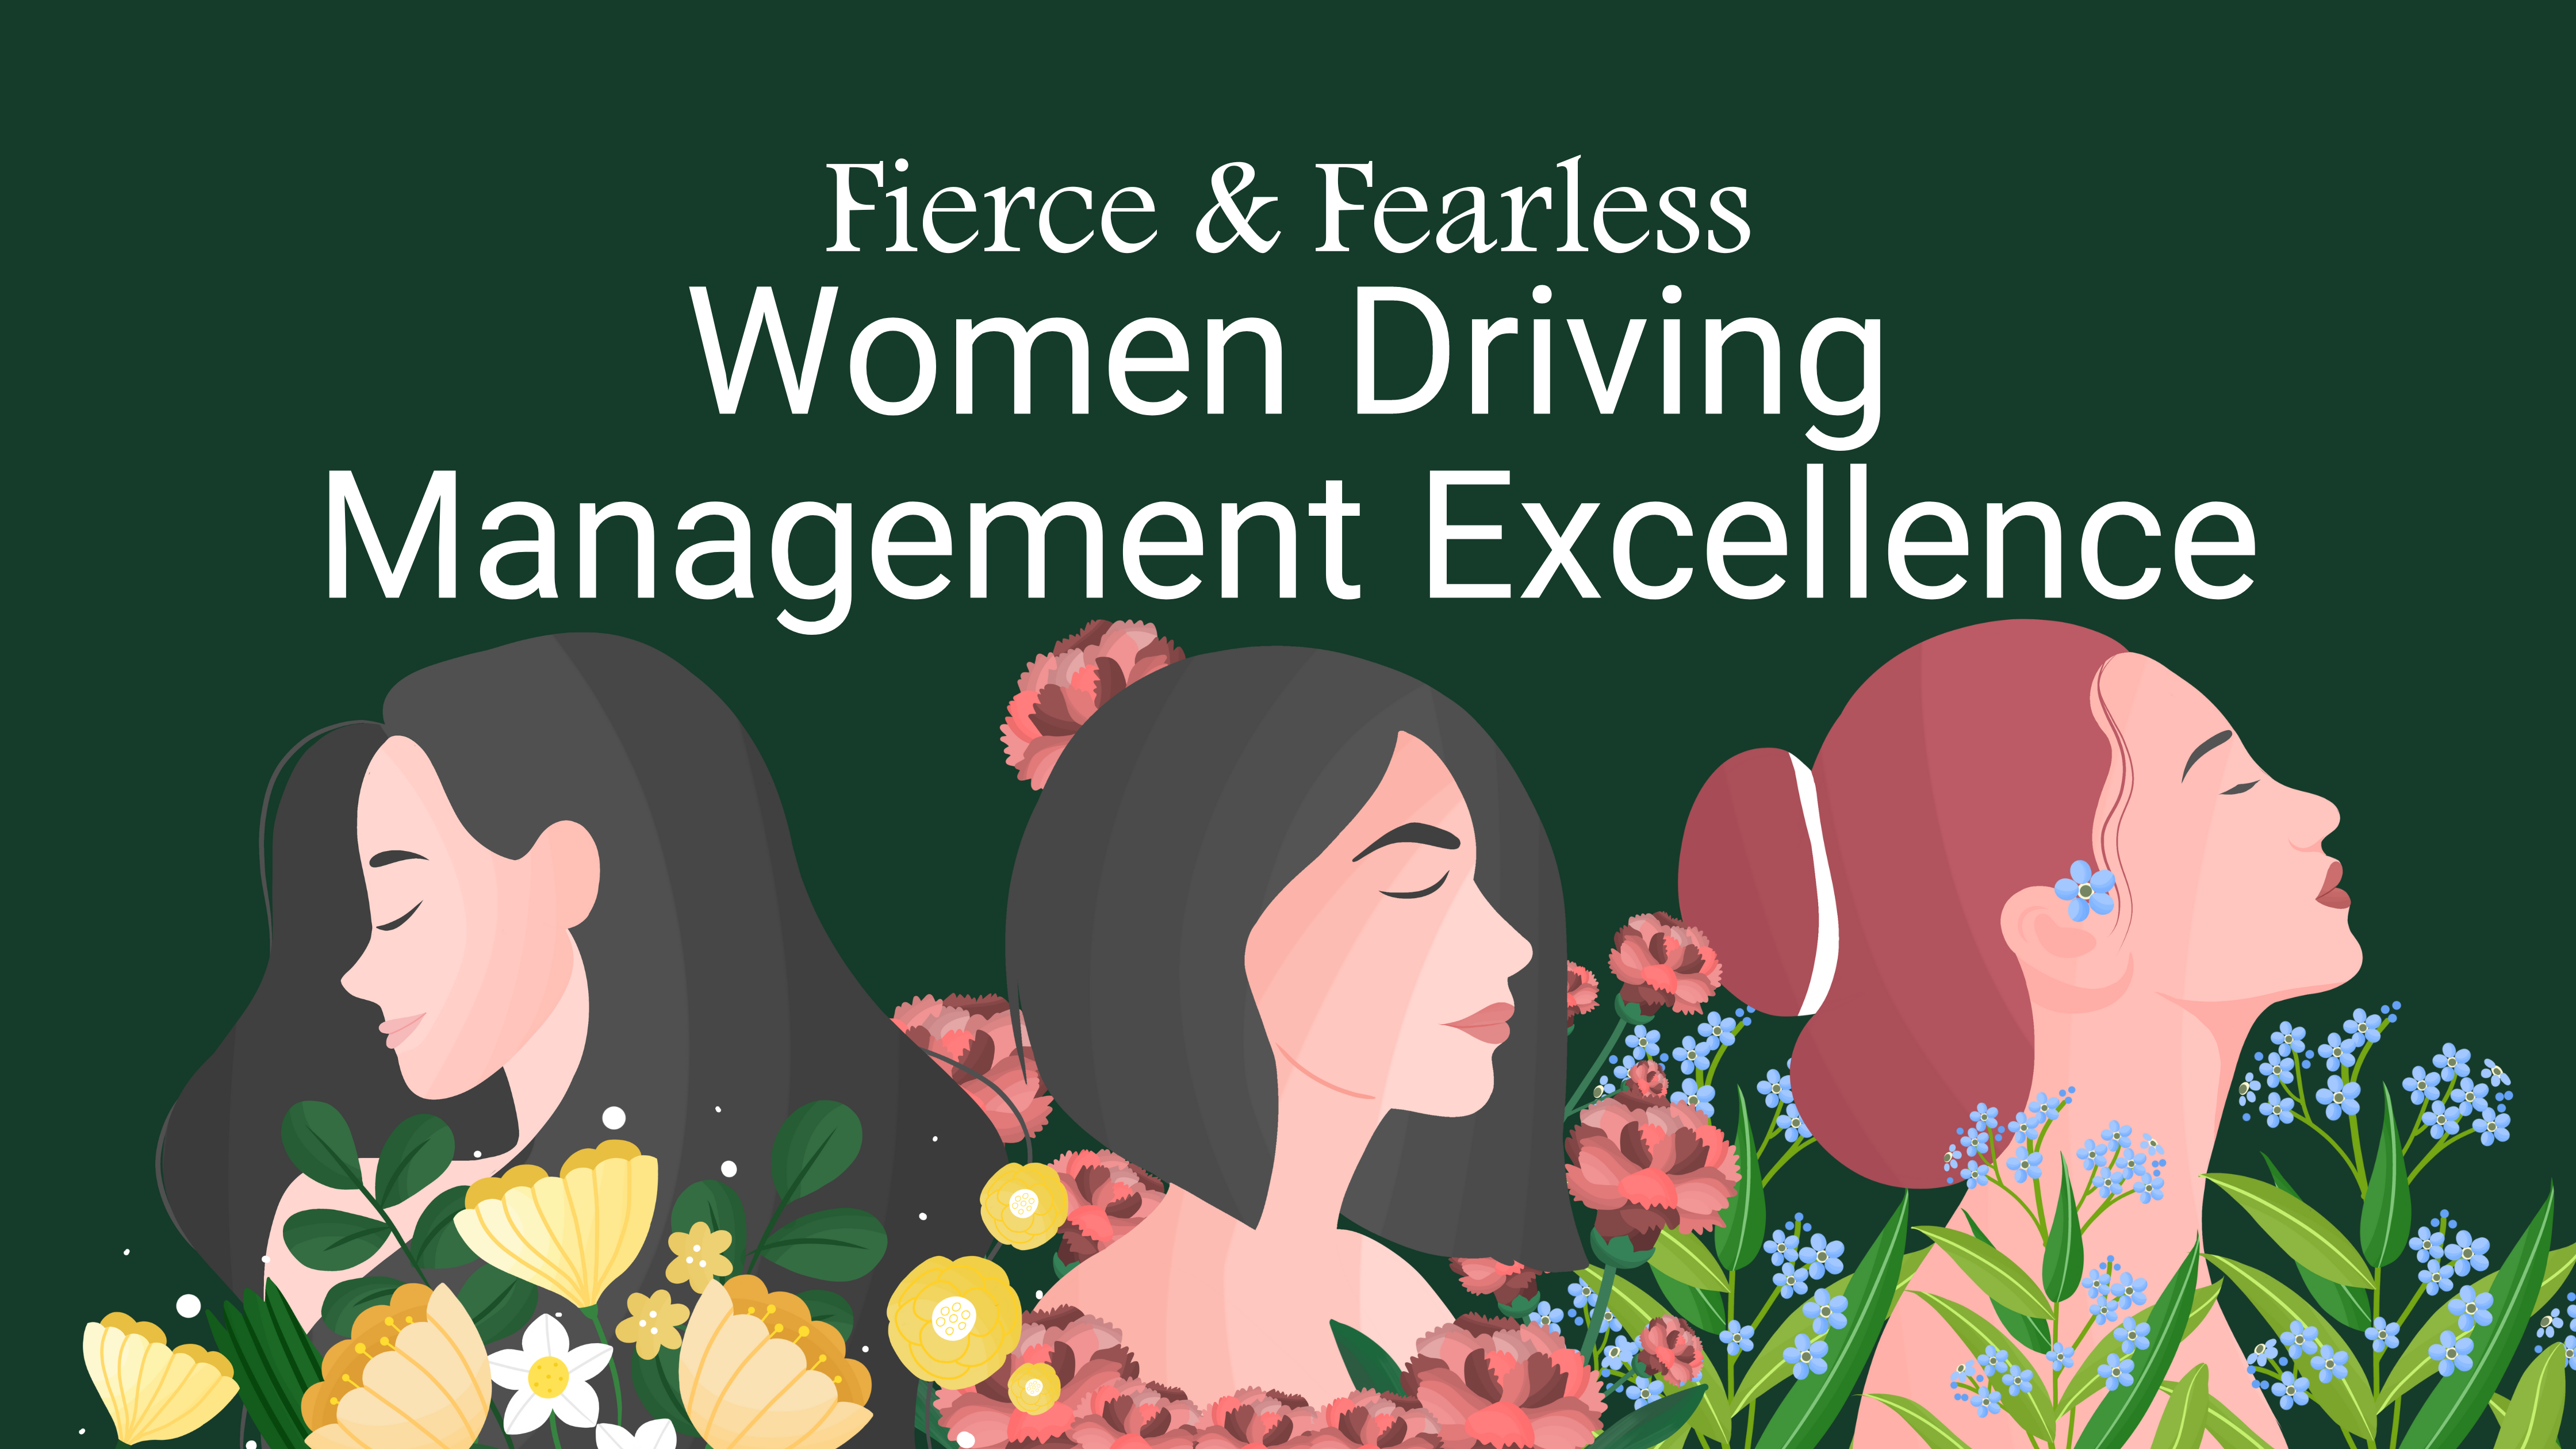 Fierce & Fearless: Women Driving Management Excellence